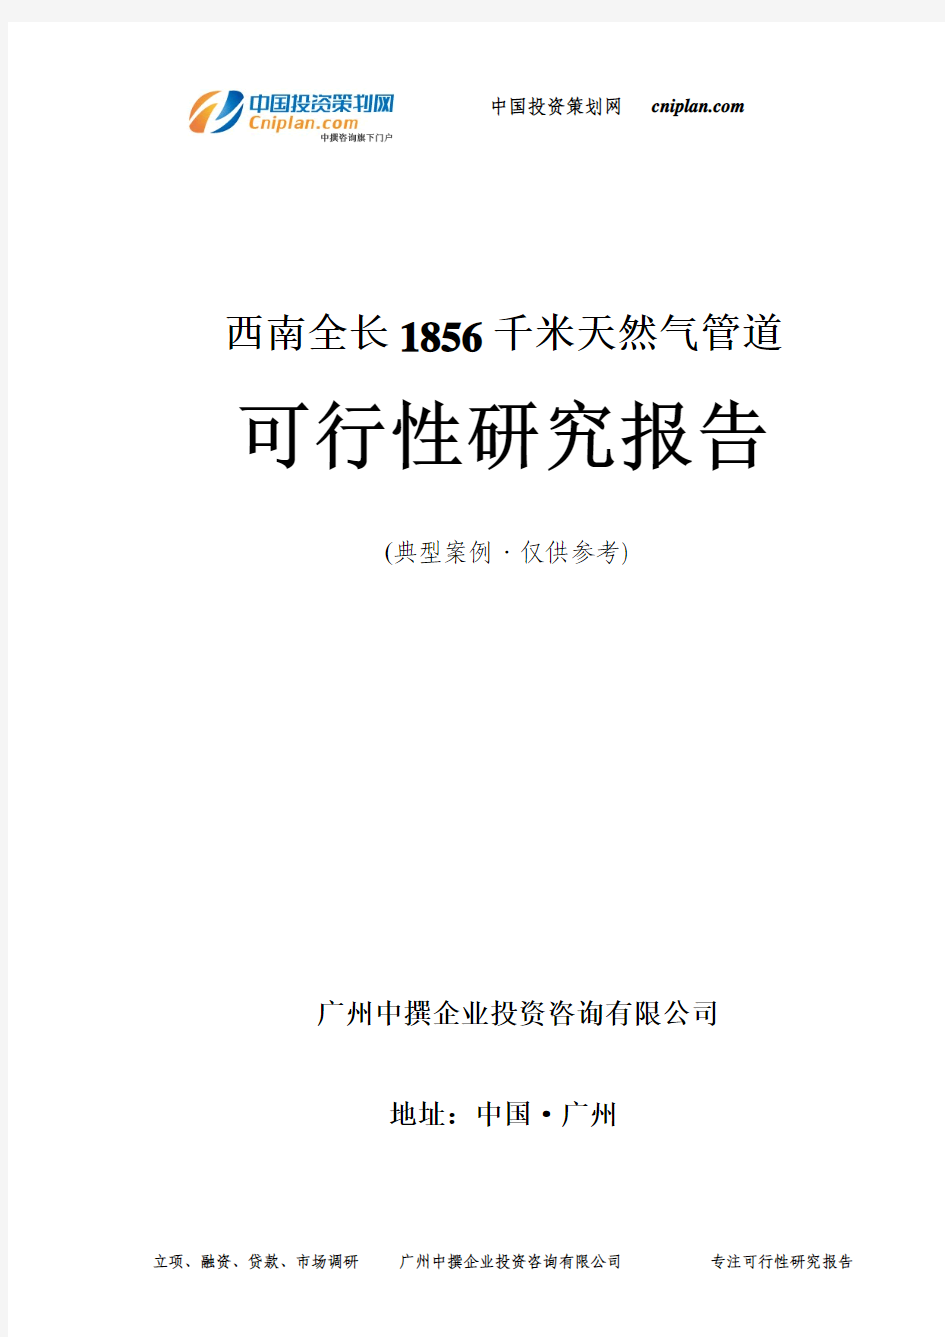 西南全长1856千米天然气管道可行性研究报告-广州中撰咨询